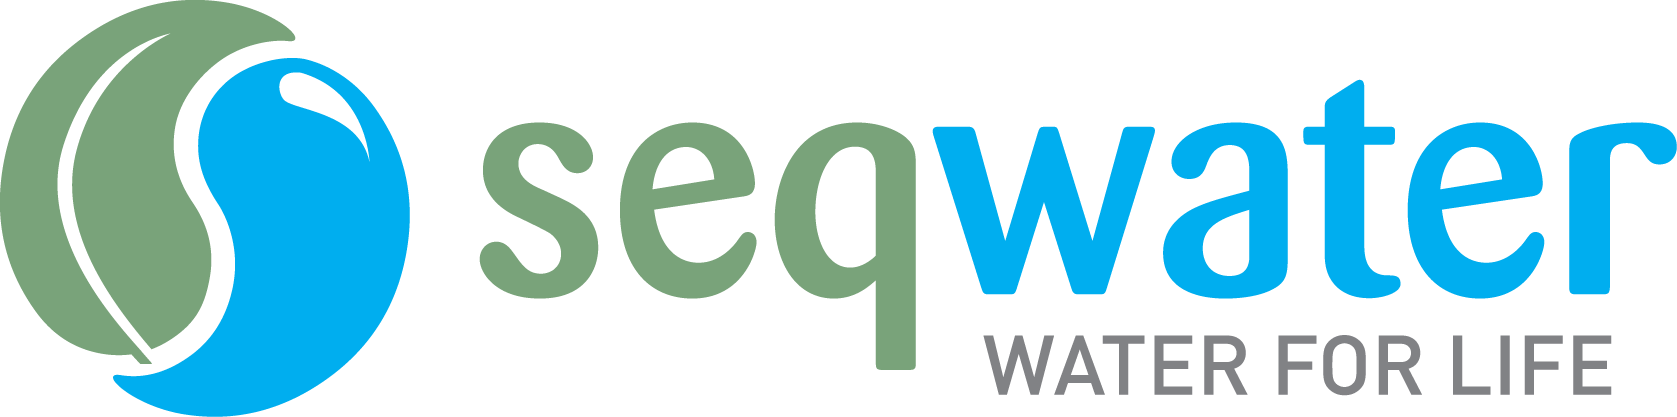 Seqwater logo horizontal